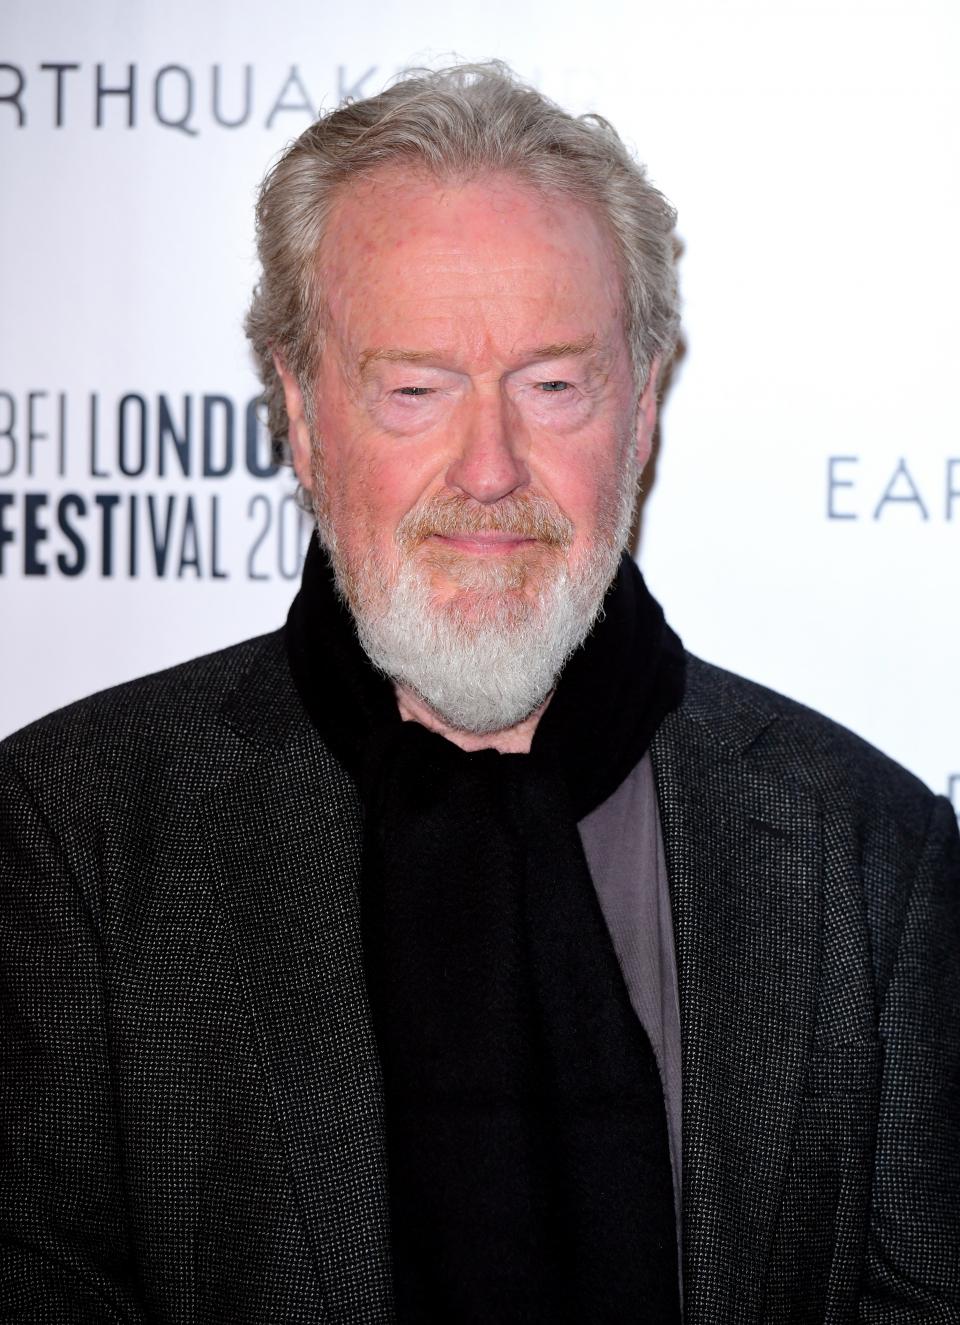 Der britische Regisseur Ridley Scott kommt zur Premiere des Films "The Earthquake Bird" beim BFI London Film Festival